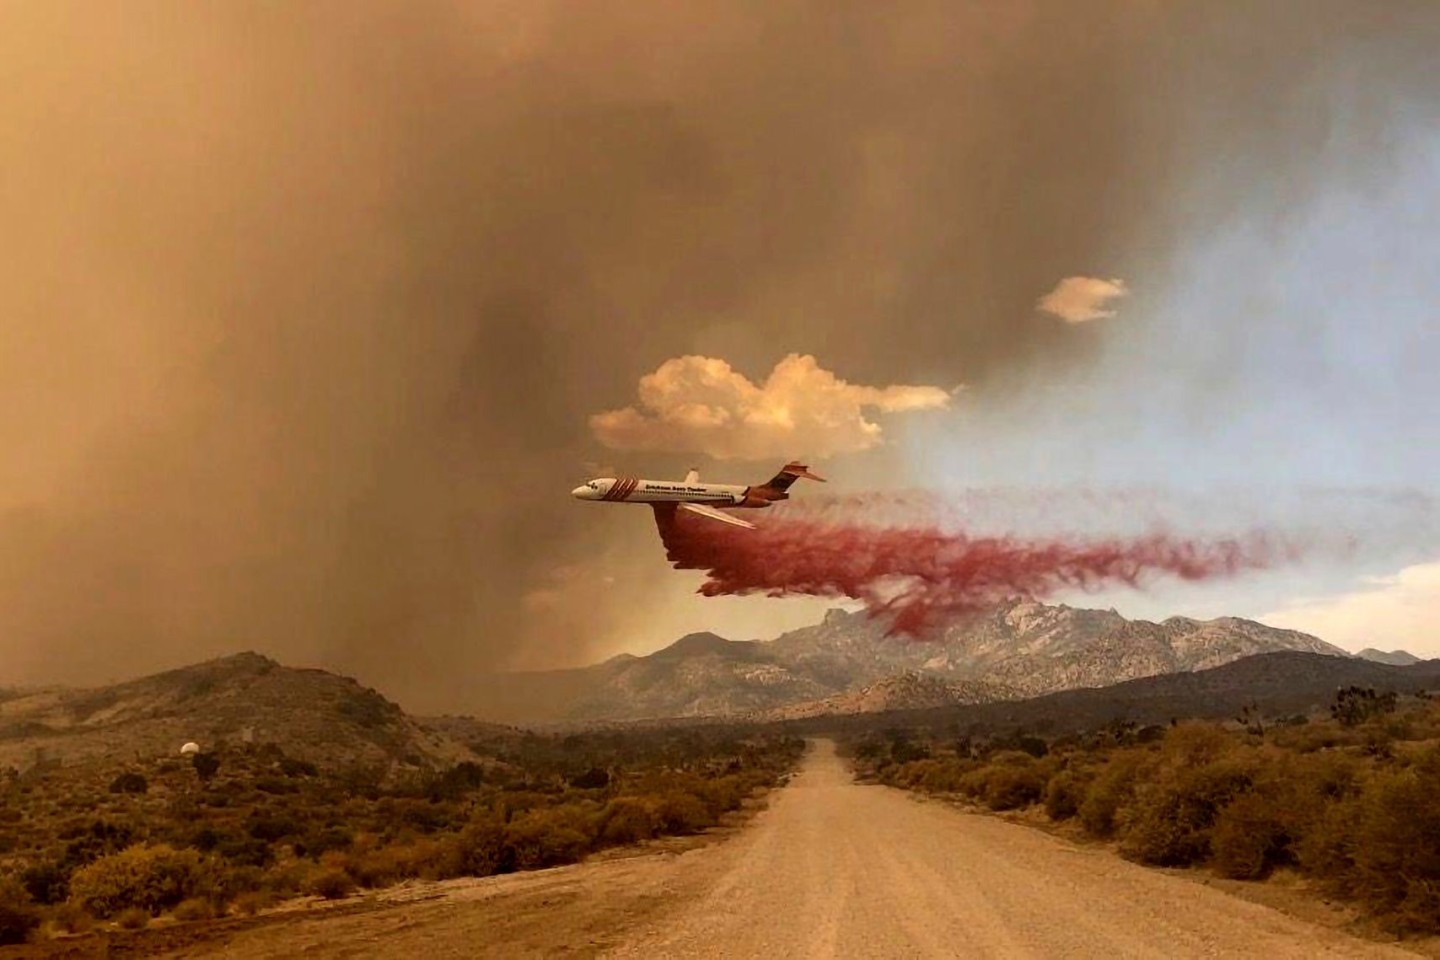 Ein Löschflugzeug ist über dem Mojave National Preserve im Einsatz, einem Schutzgebiet im US-Bundesstaat Kalifornien.